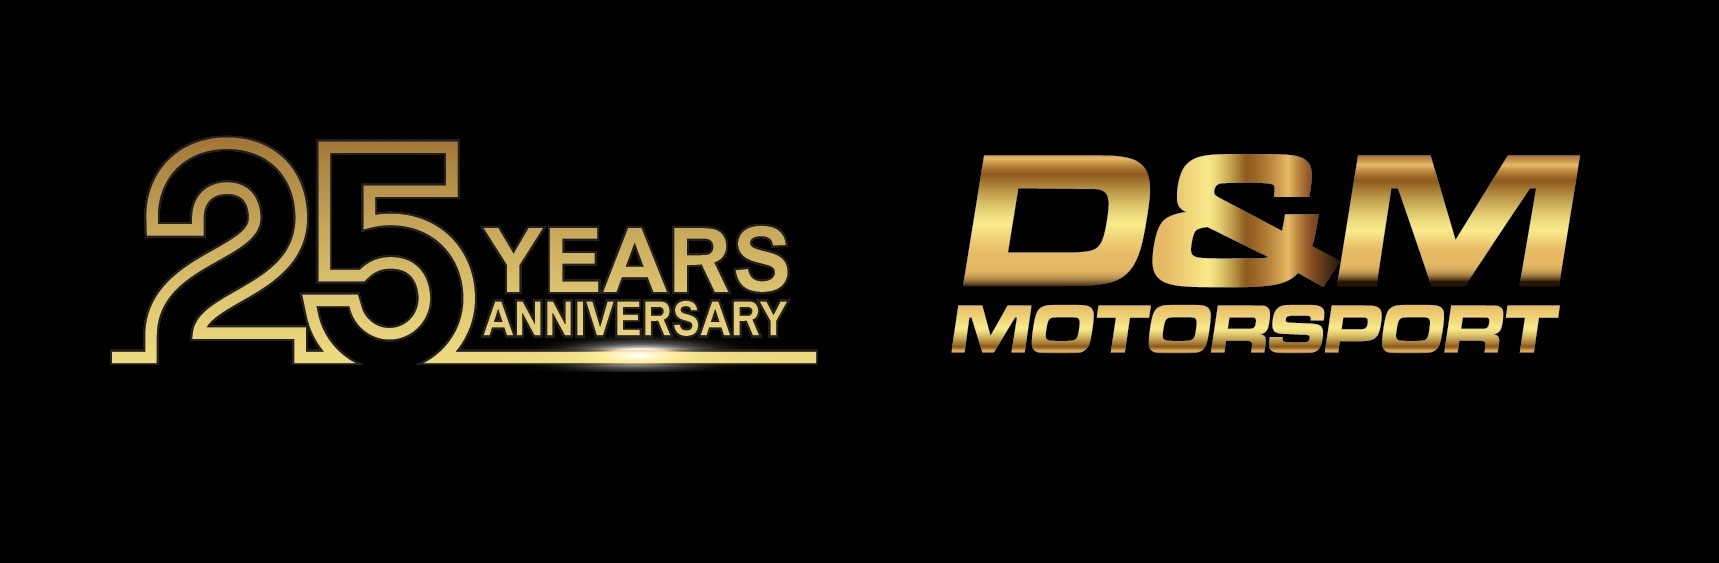 D&M Motorsport over 25 years